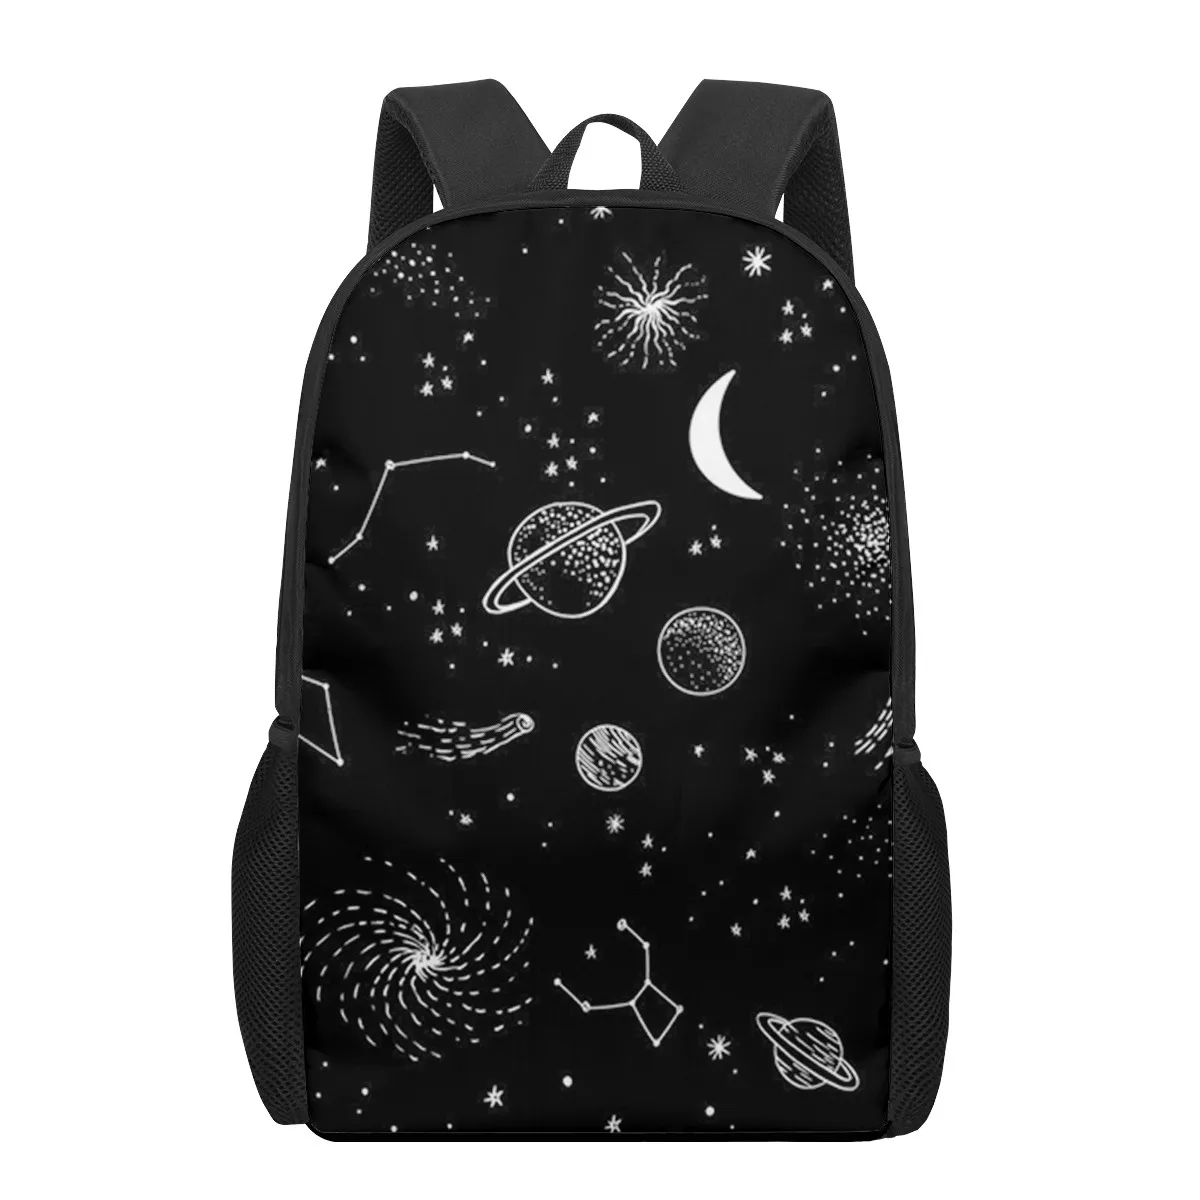 "Художественный школьный ранец для мальчиков и девочек с черным и белым 3d-рисунком, повседневные сумки для книг, Детский рюкзак для школы"